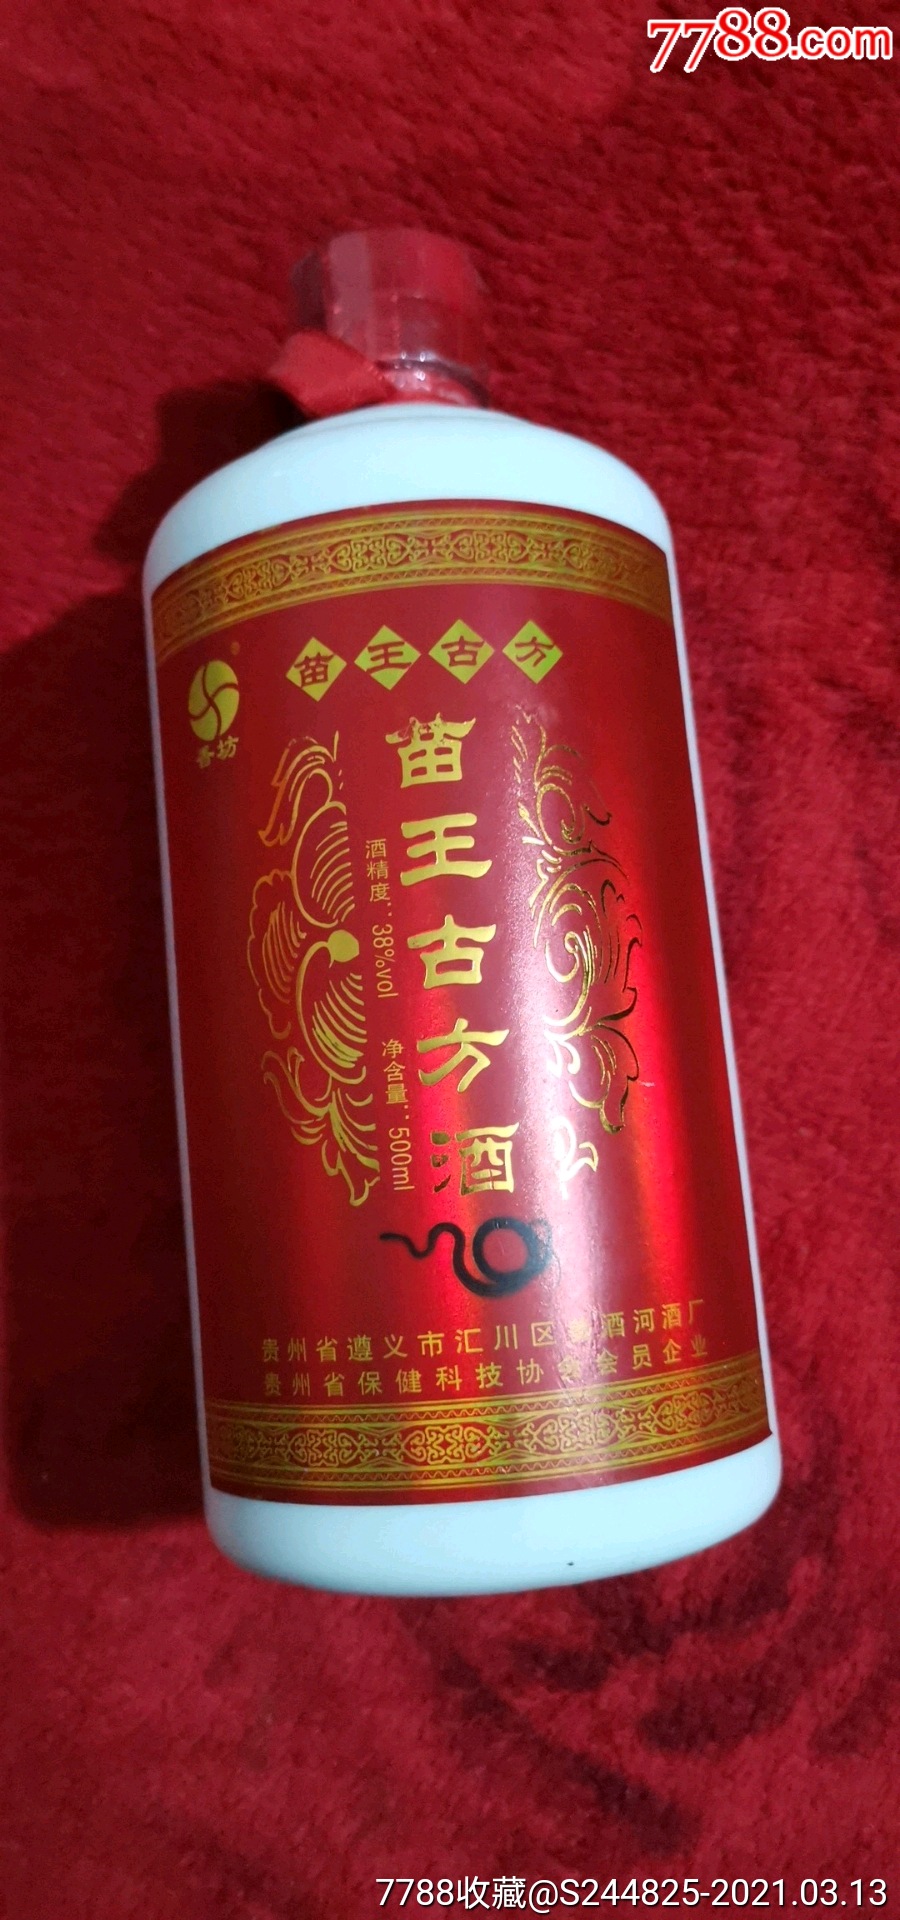 苗王古方酒,香坊,茅台镇传统佳酿.